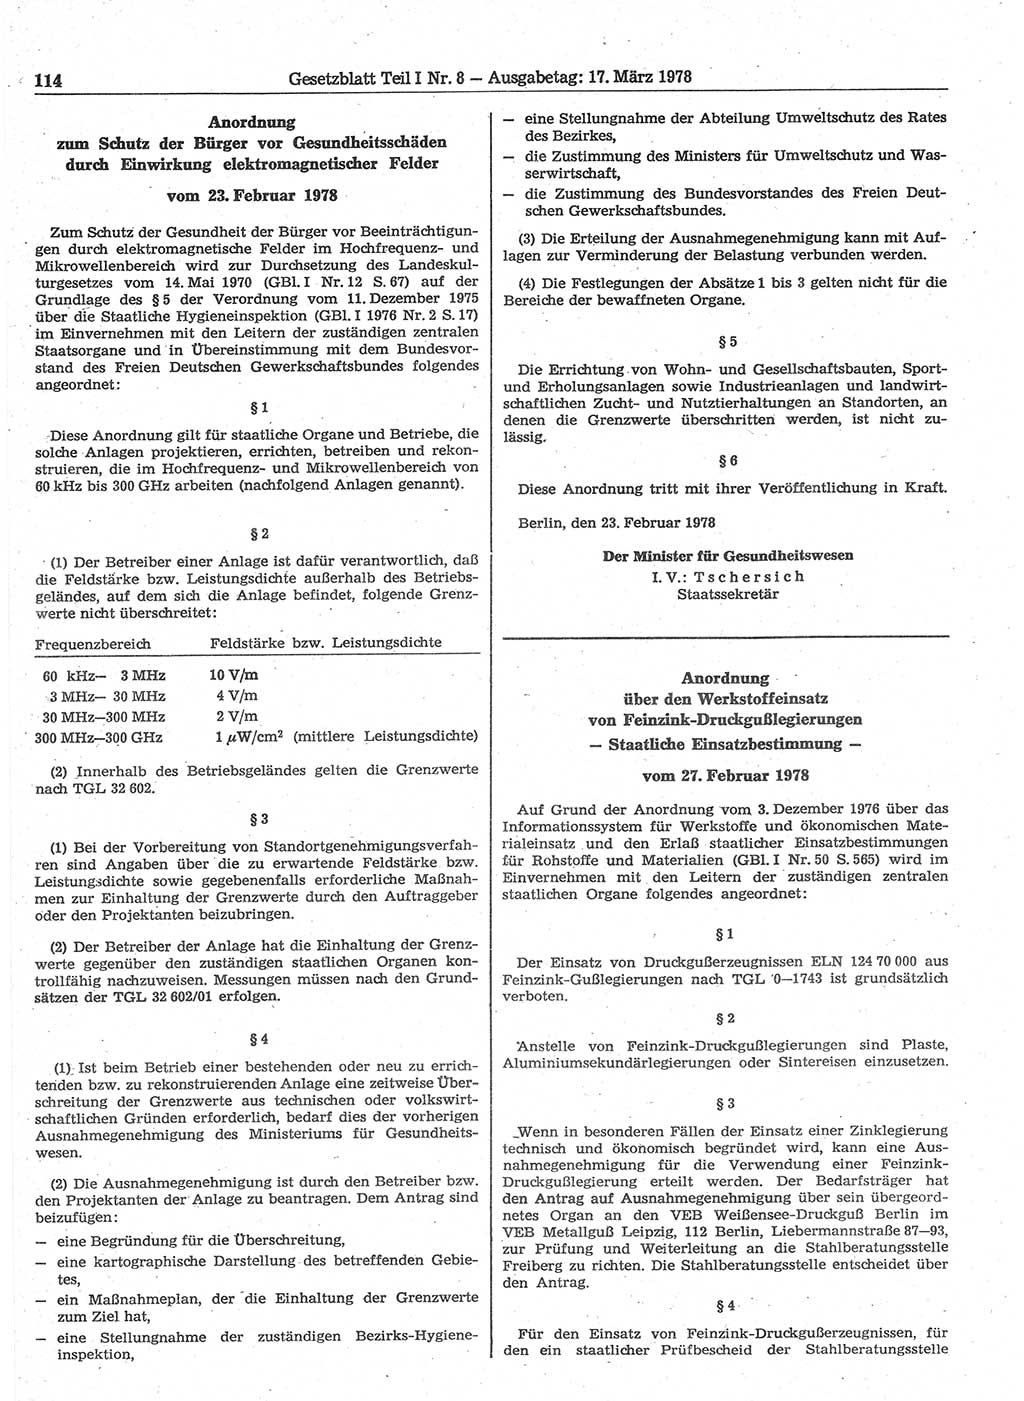 Gesetzblatt (GBl.) der Deutschen Demokratischen Republik (DDR) Teil Ⅰ 1978, Seite 114 (GBl. DDR Ⅰ 1978, S. 114)